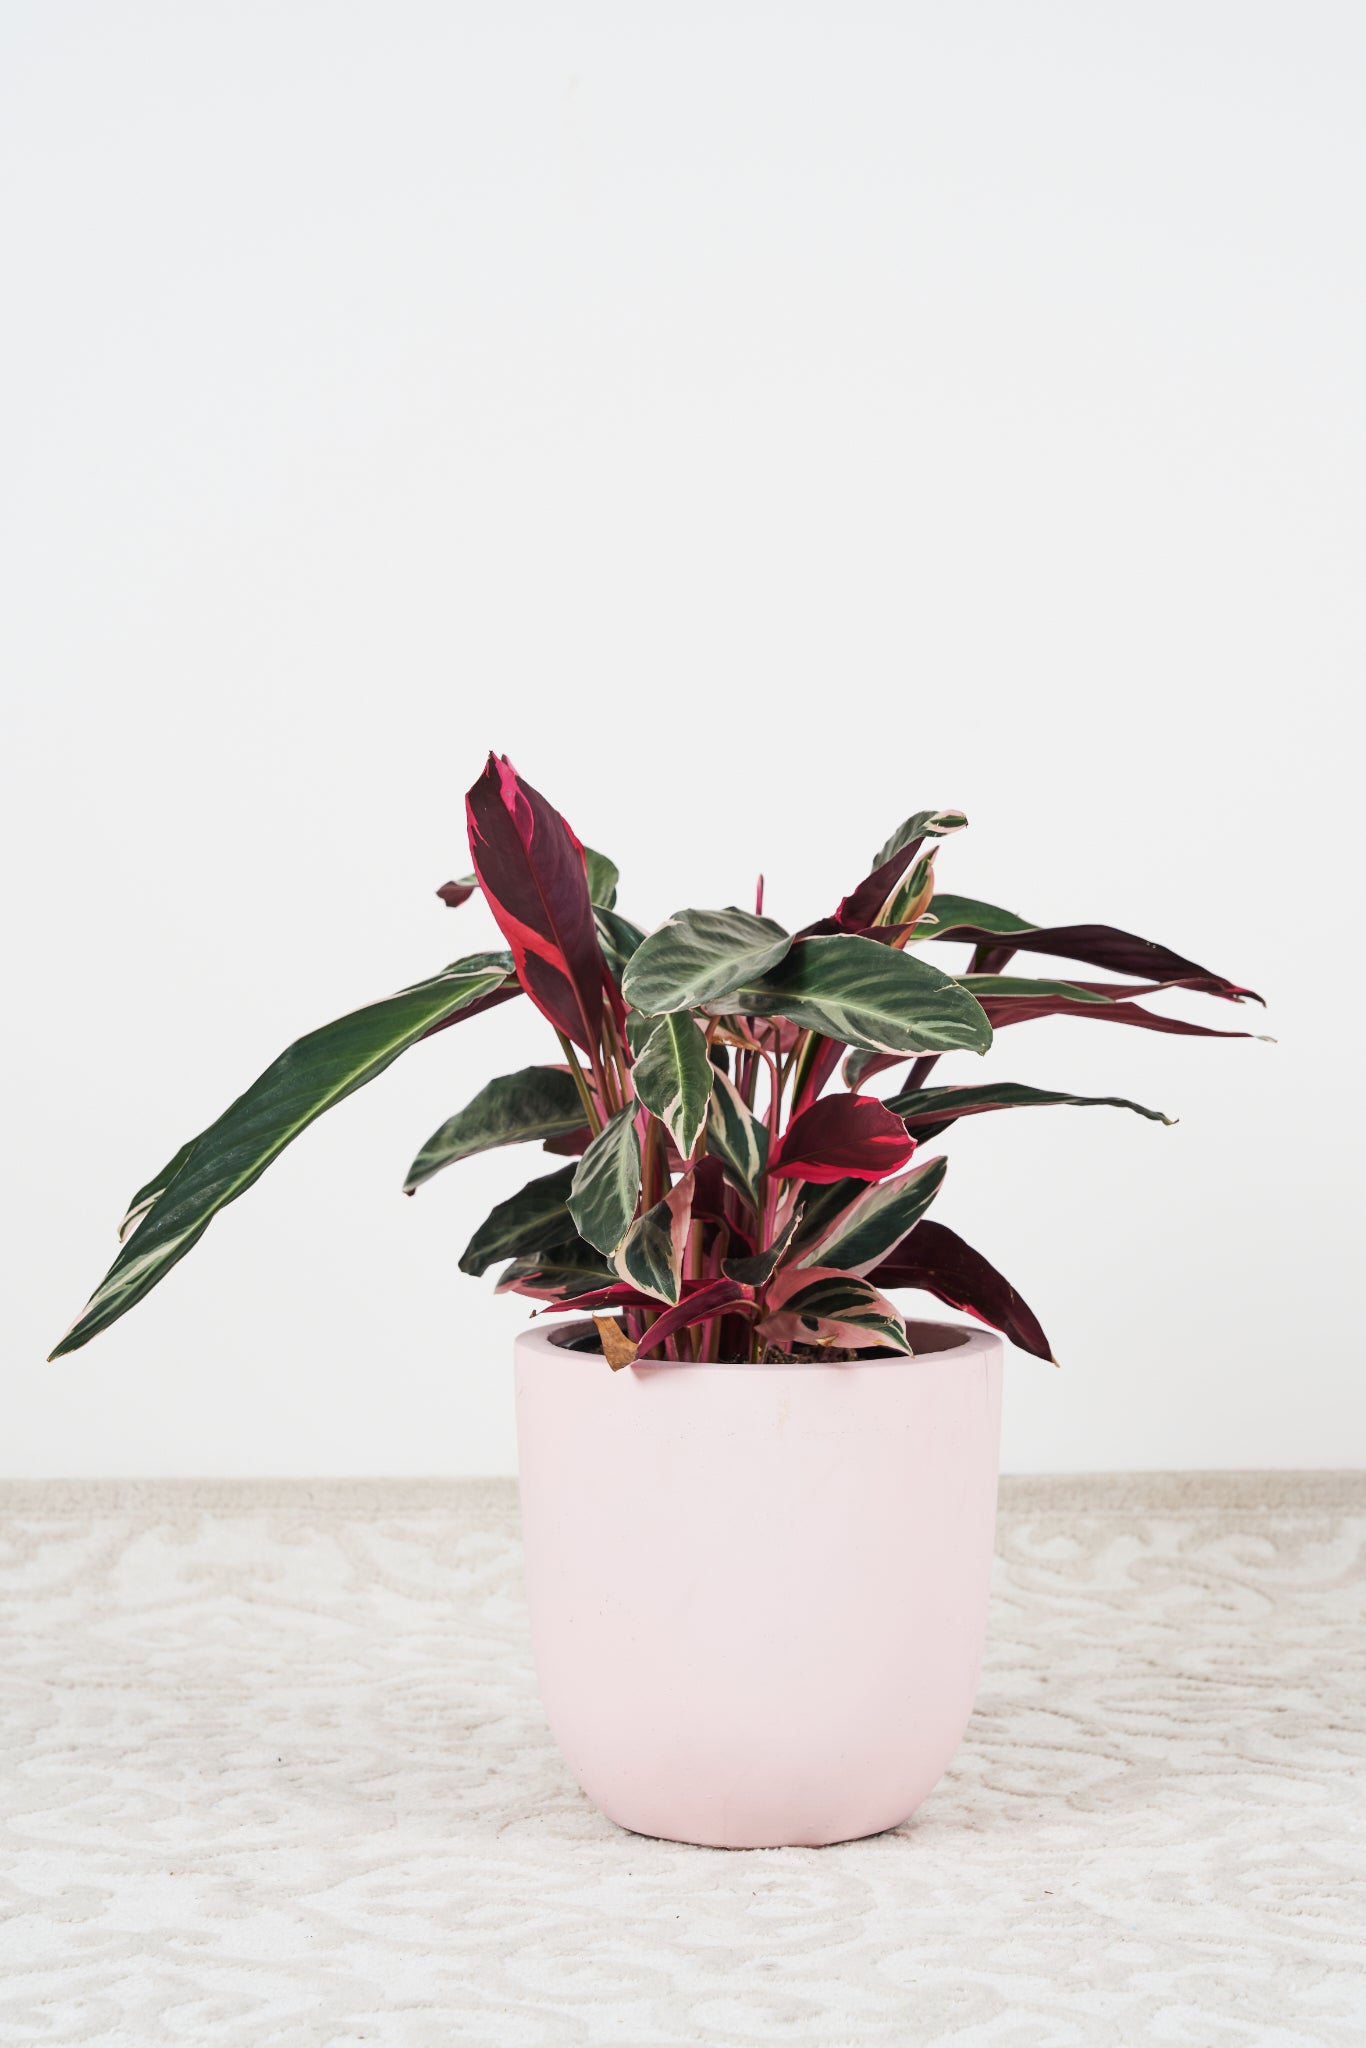 Tricolour stromanthe plant